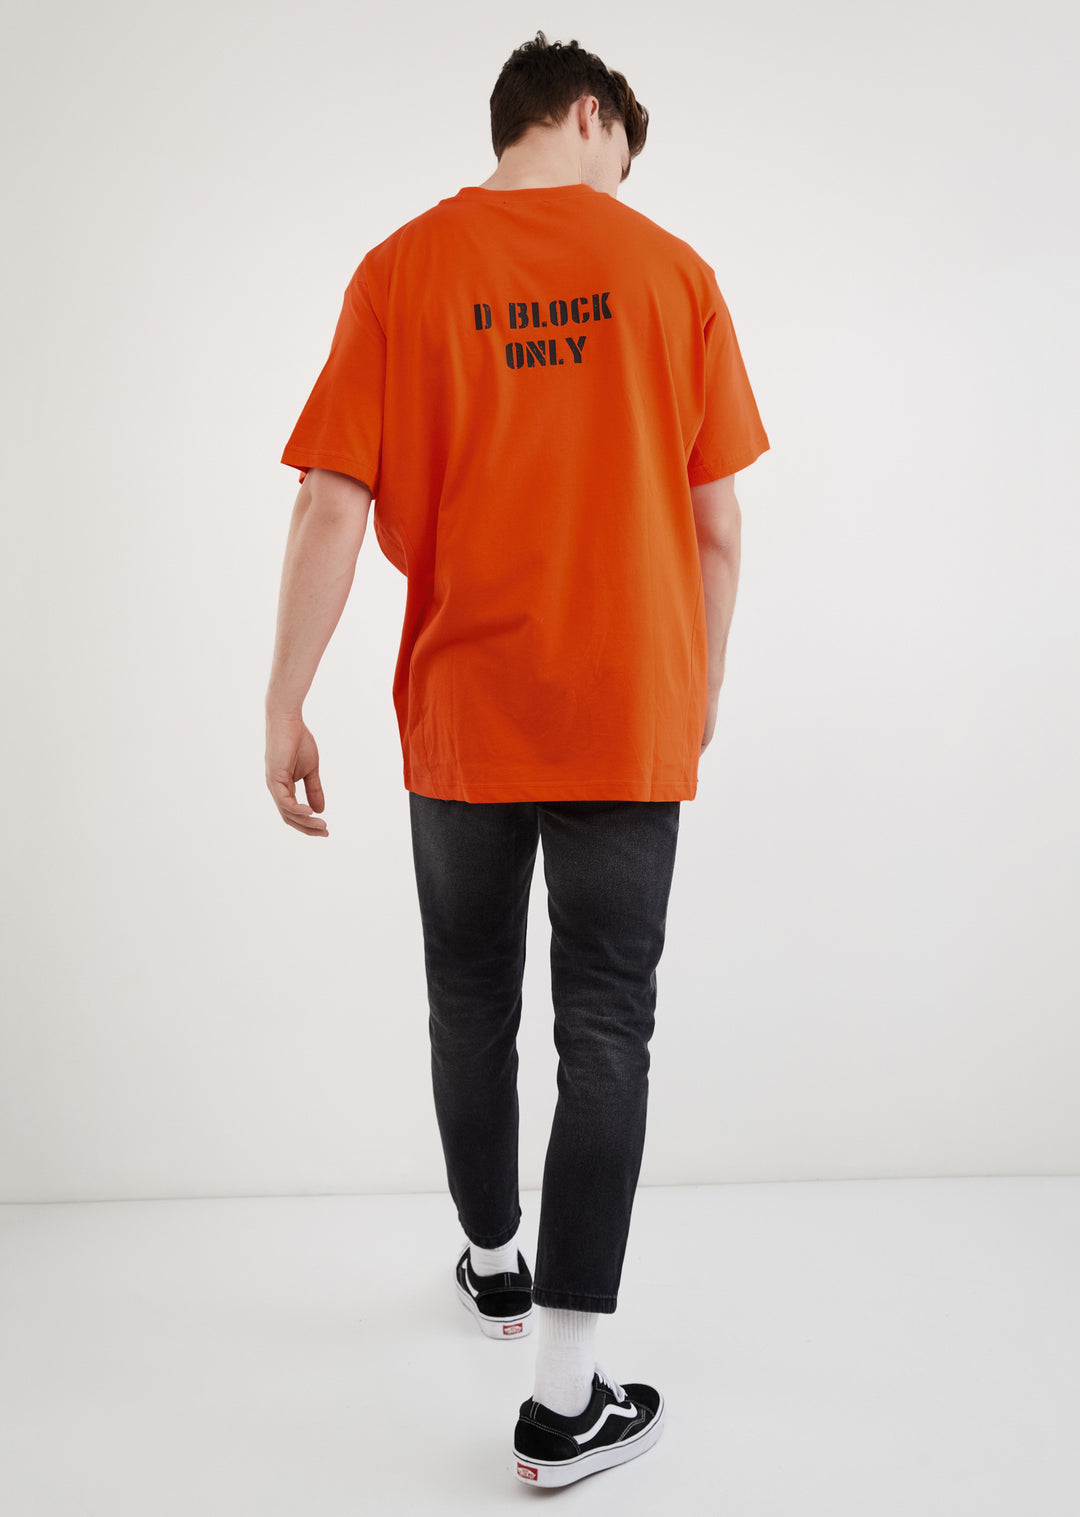 D Block Only / Oversize T-shirt